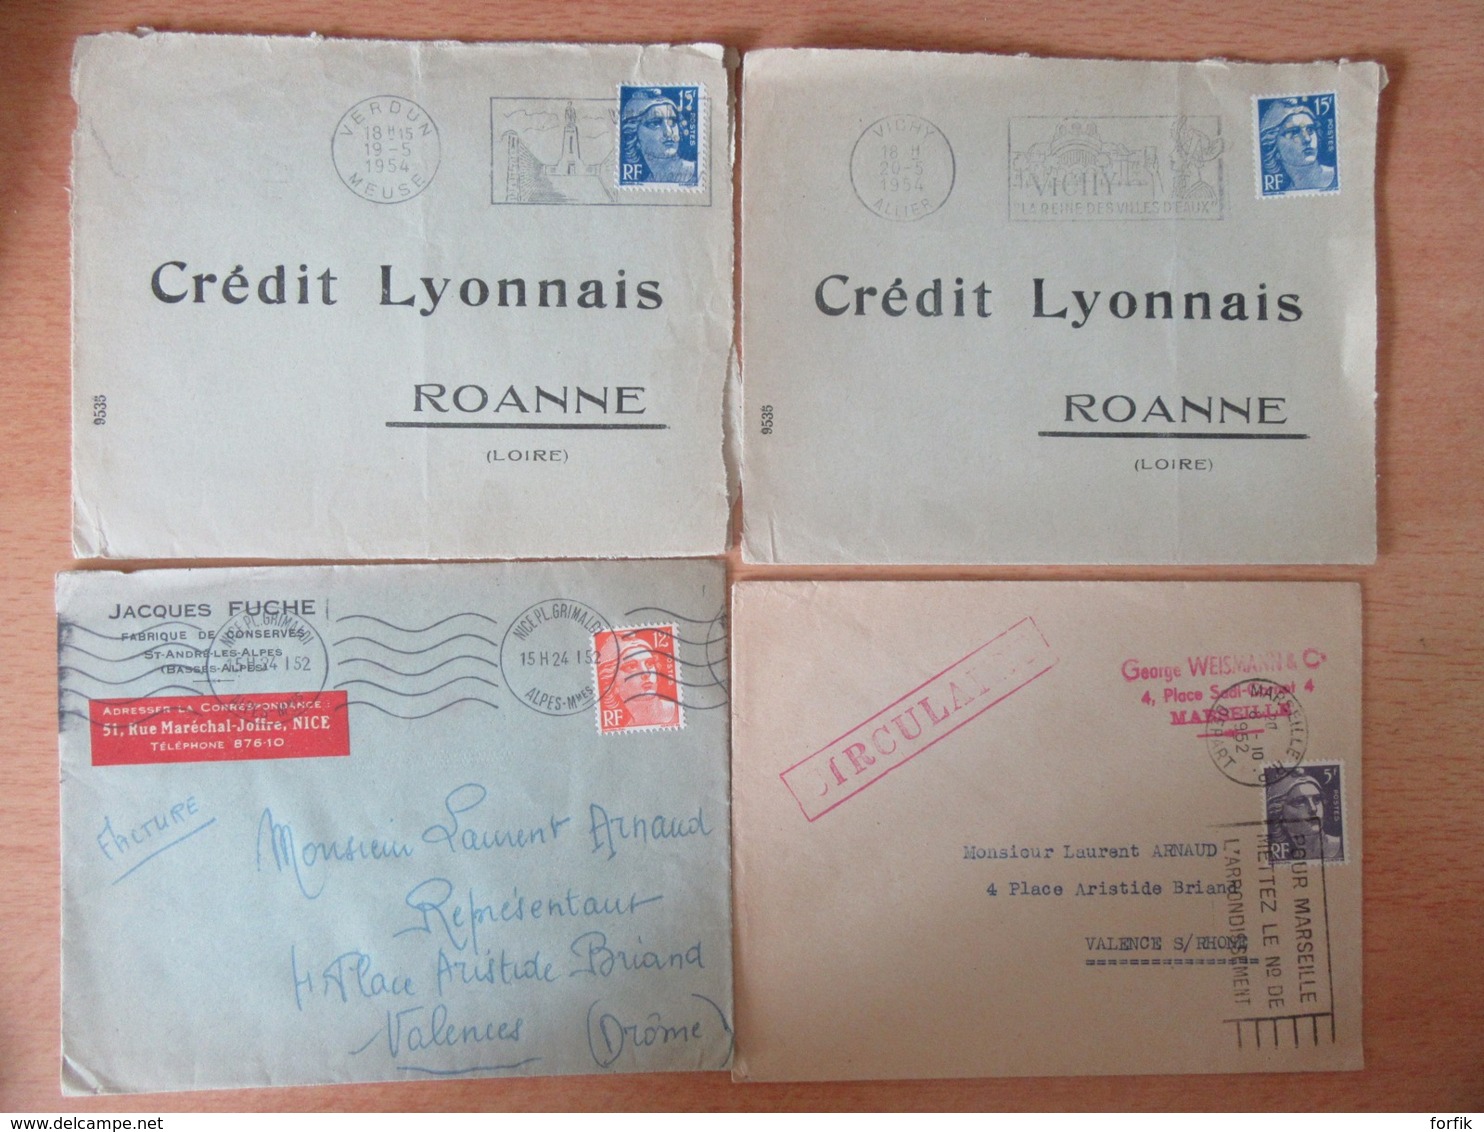 France + Monaco - 37 Enveloppes Et Cartes - Période Classique (Napoléon 1862) à Moderne (1995) - A étudier - Colecciones Completas